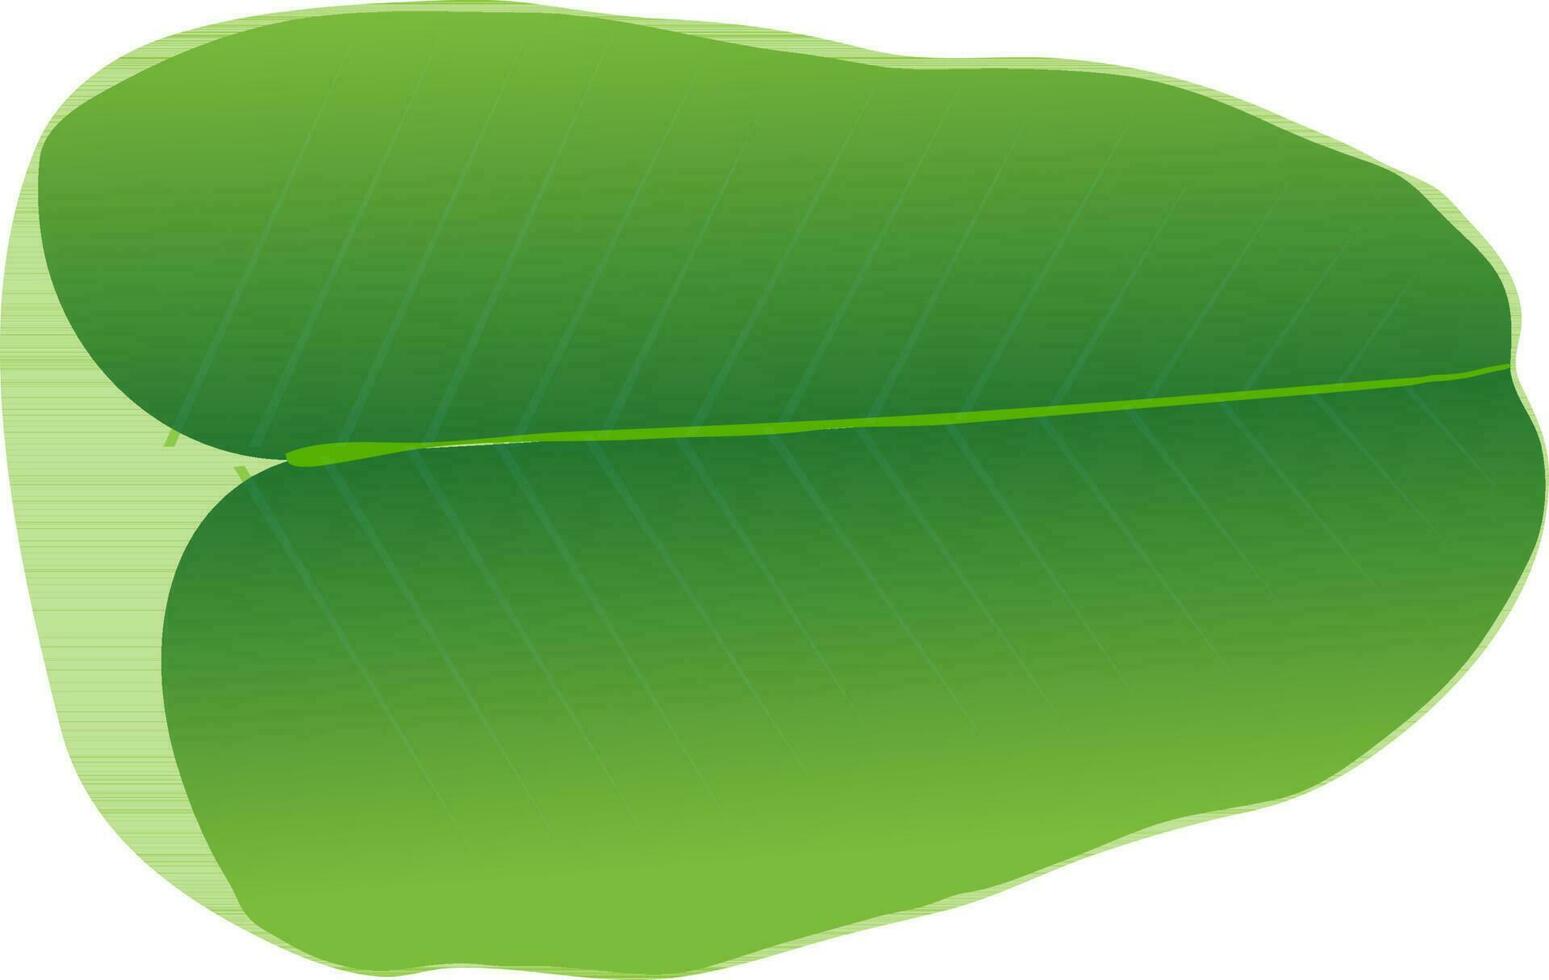 illustratie van groen banaan blad. vector